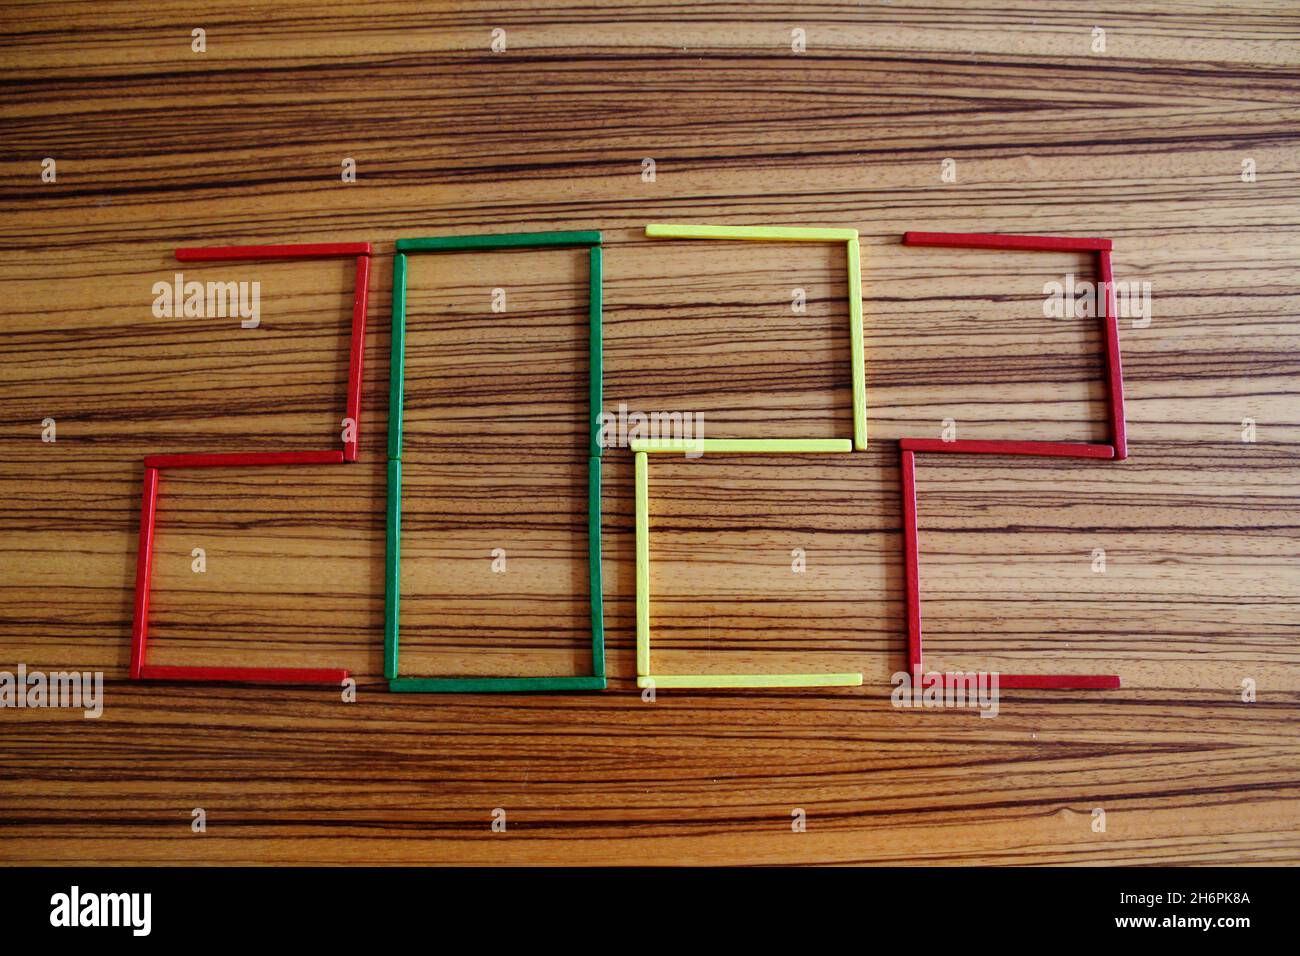 Bunte Holzstäbchen in rot, grün und gelb, auf einem Holztisch liegend, die die Zahl 2022 darstellen. Foto de stock